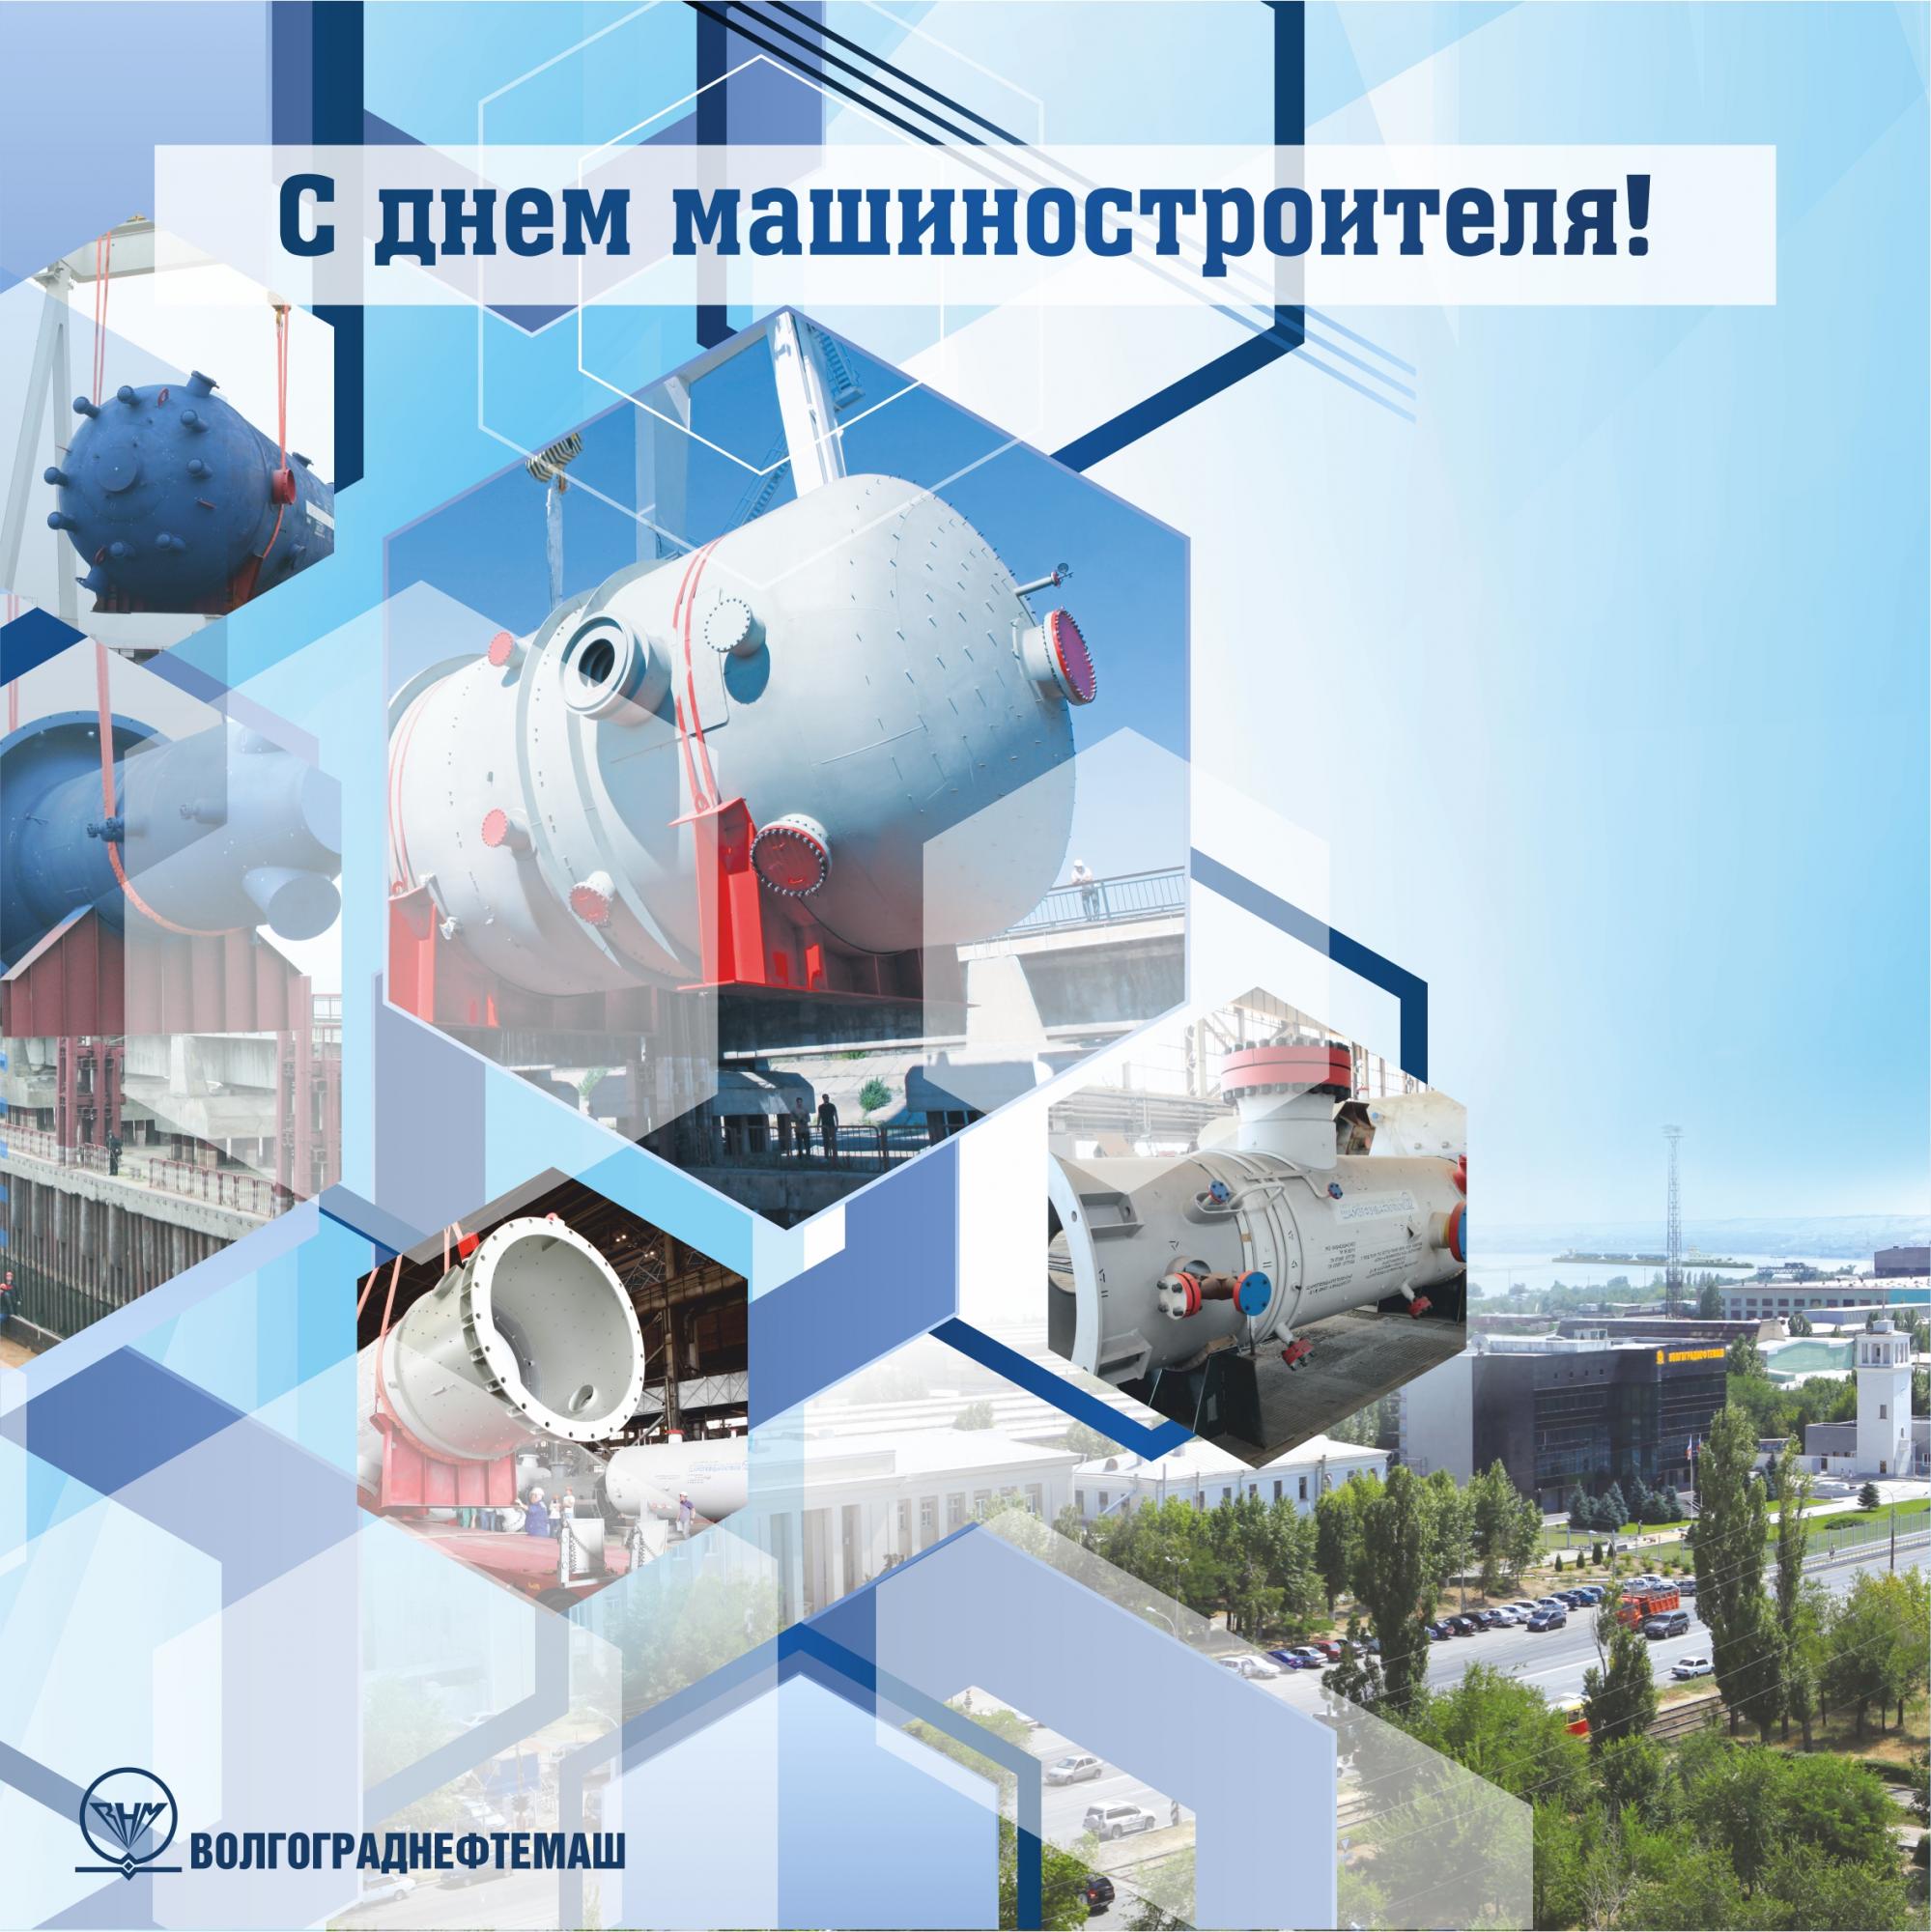 В этом году ОАО «Волгограднефтемаш» отмечает 79 лет со дня основания завода